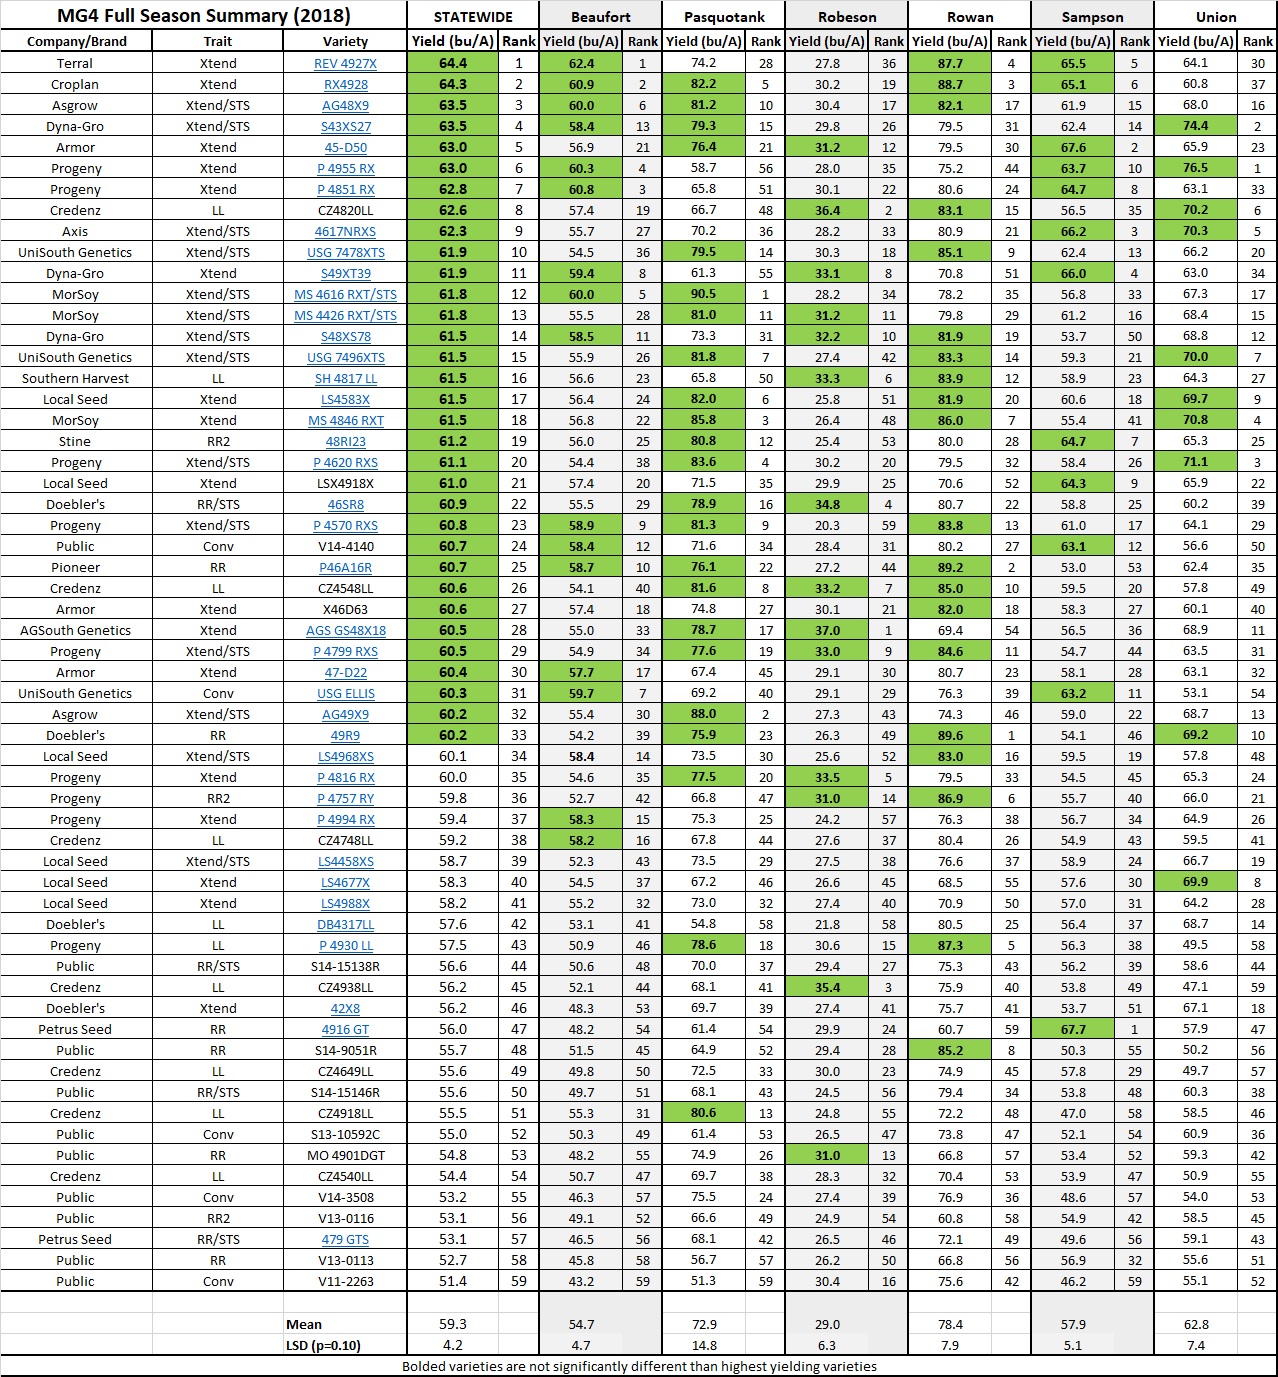 MG4 Location Summary - Full Season - 2018 chart image